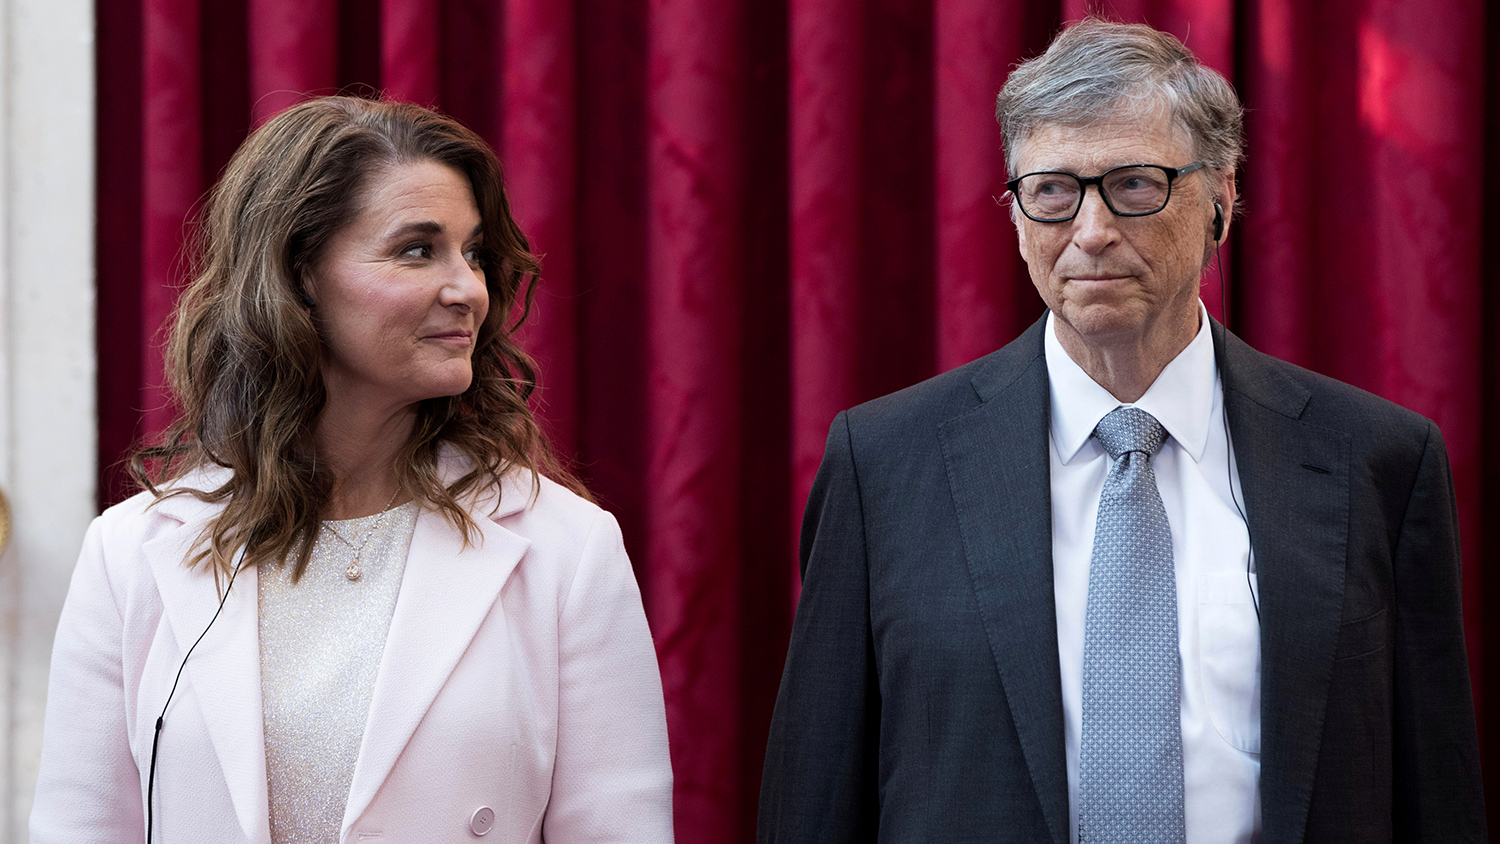 Билла Гейтса ожидают репутационные потери, потому что это двойные стандарты — эксперт